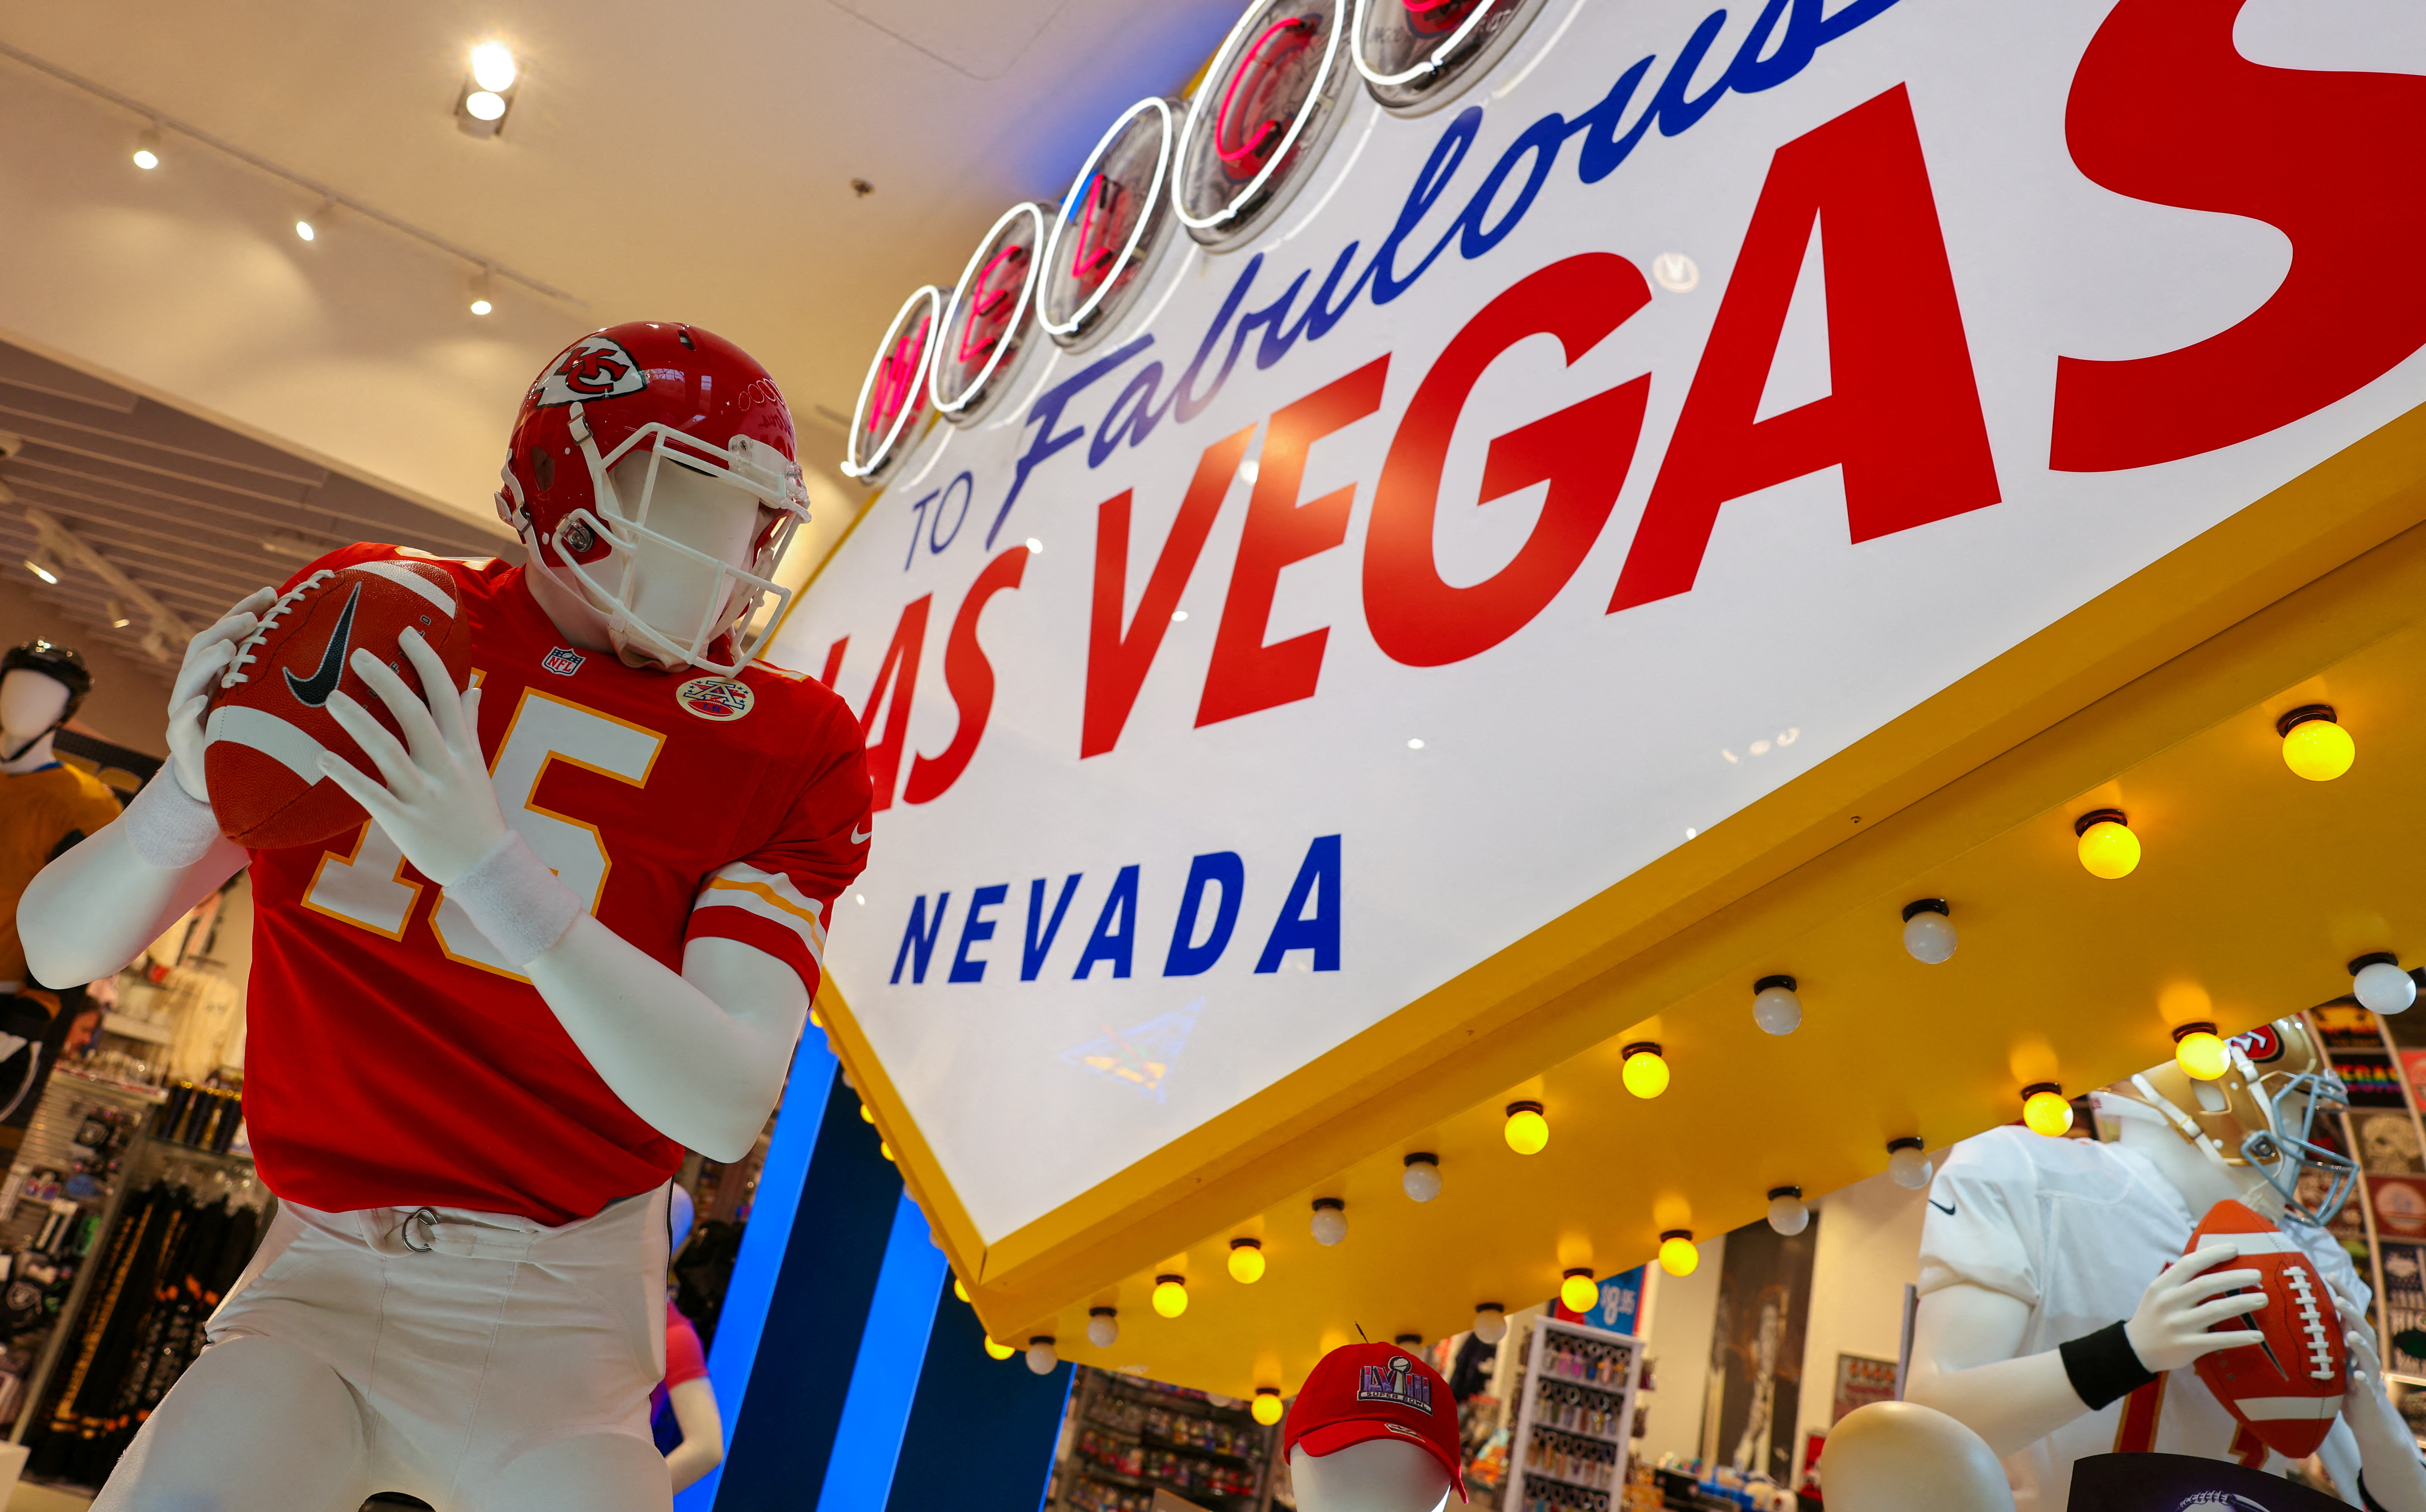 Super Bowl XVIII souvenirs for sale in Las Vegas